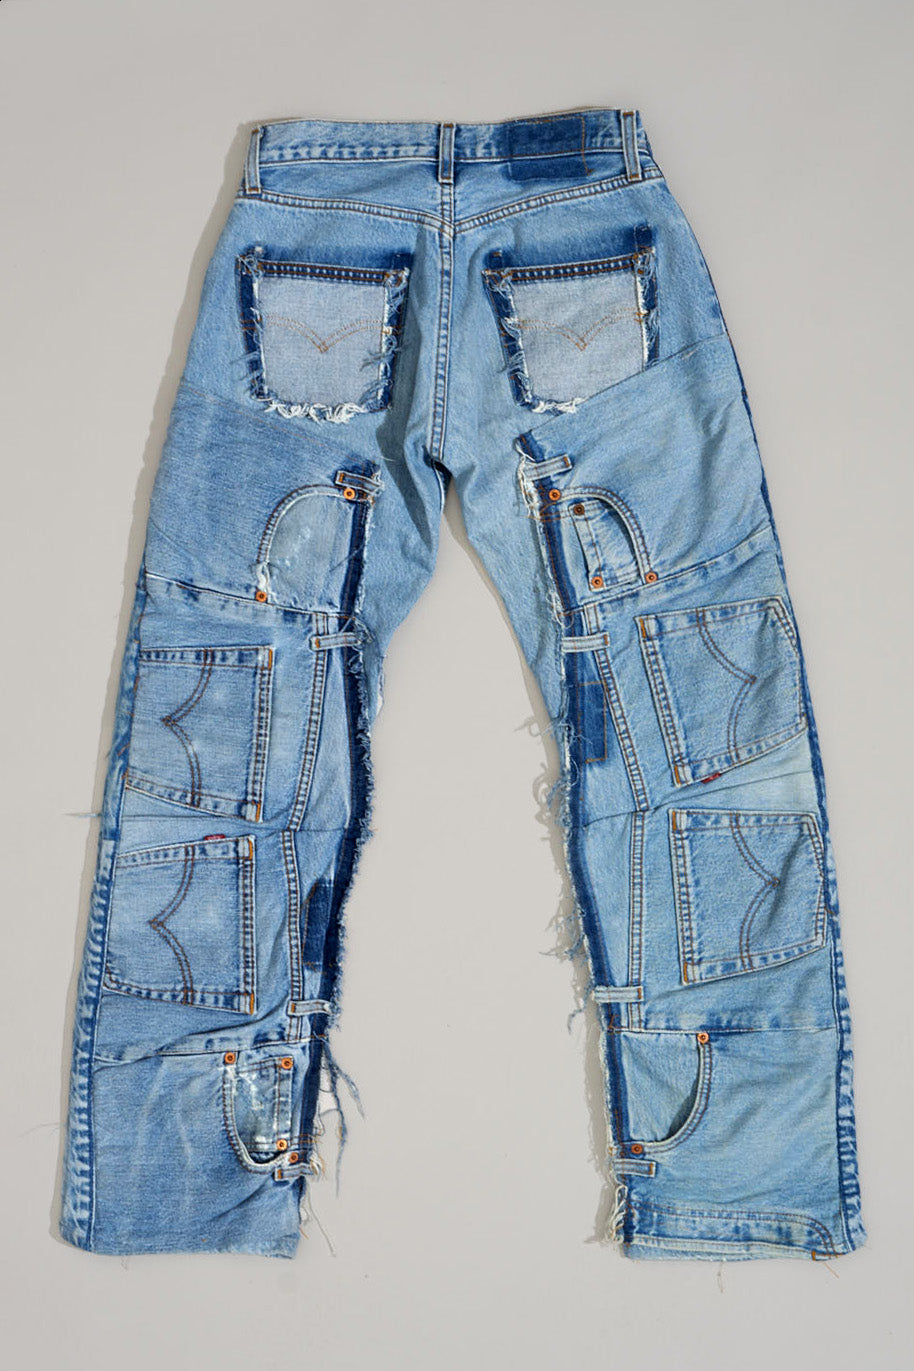 LEVIS SUPER RARE PATCHED Jeans - W30